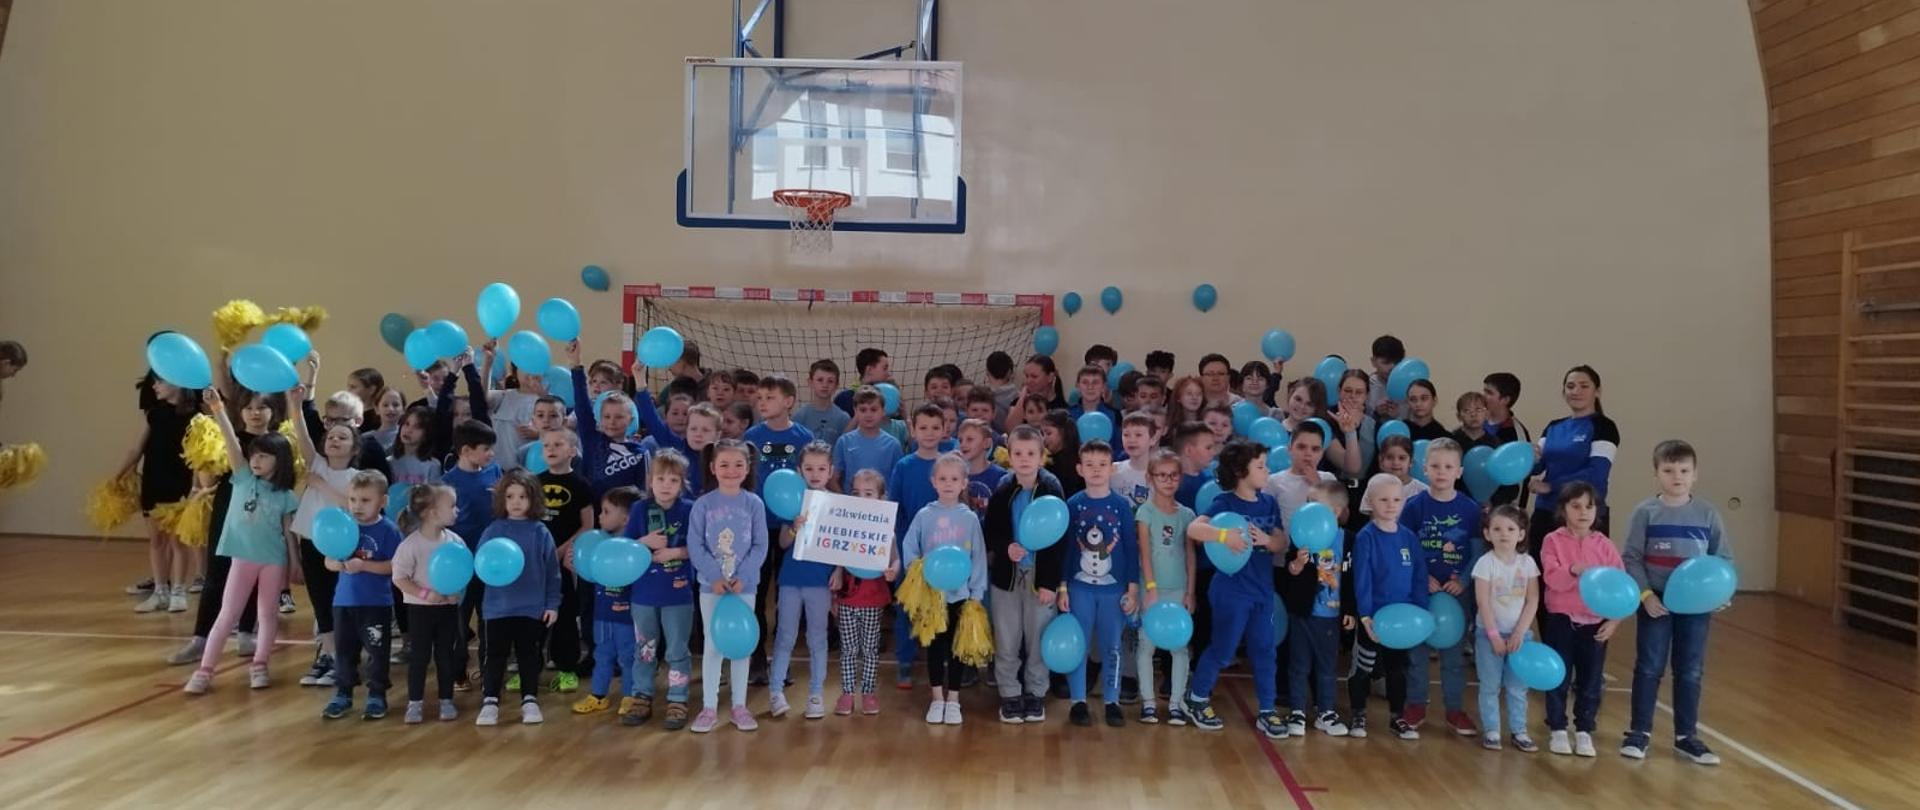 Wszyscy uczniowie szkoły ubrani na niebiesko, trzymając niebieskie balony stoją na sali gimnastycznej solidaryzując się tym gestem z osobami będącymi w spektrum autyzmu